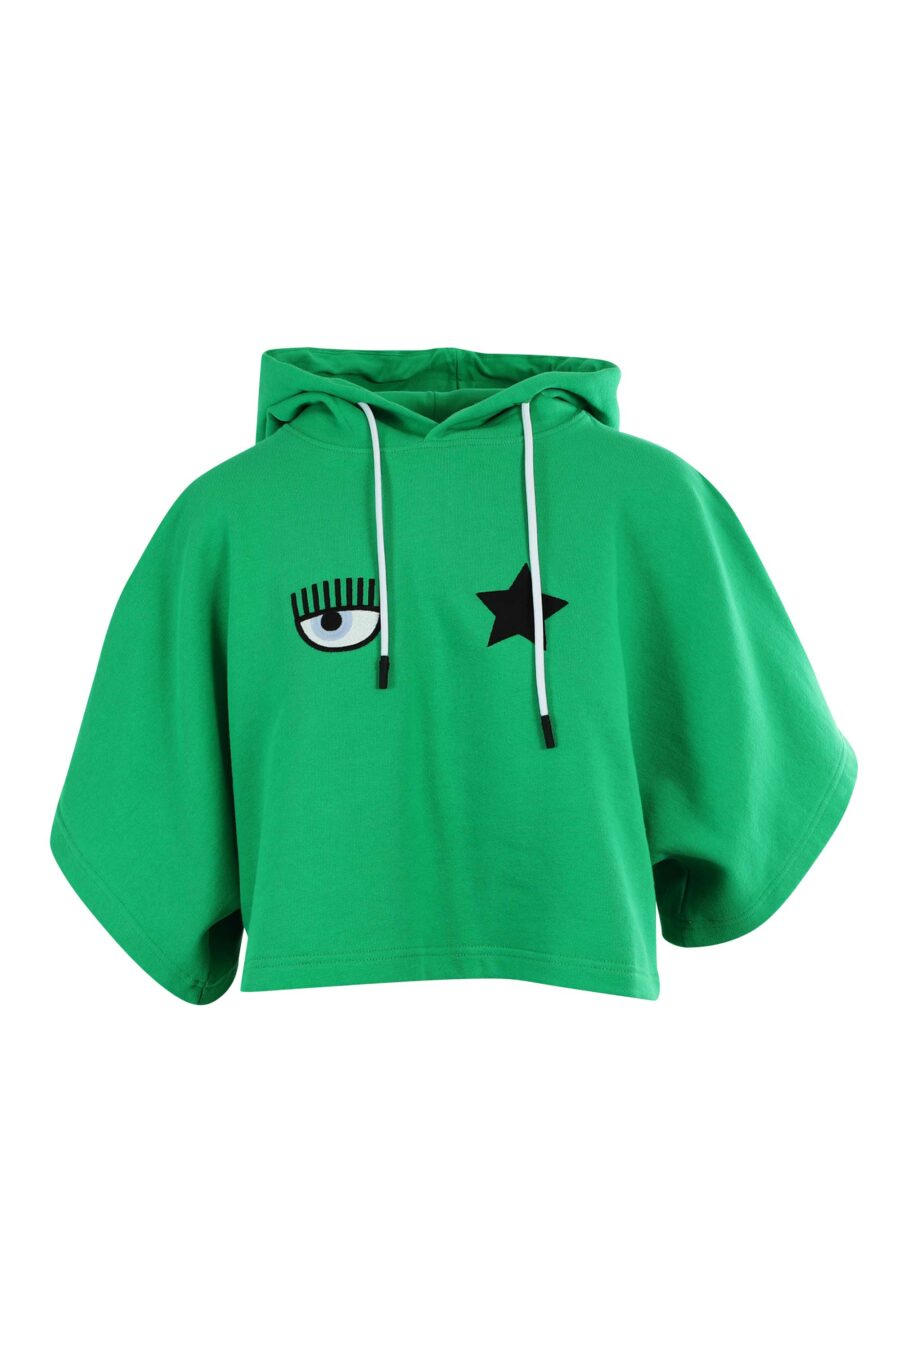 Sudadera manga corta verde con capucha y logo ojo y estrella - 8052672417961